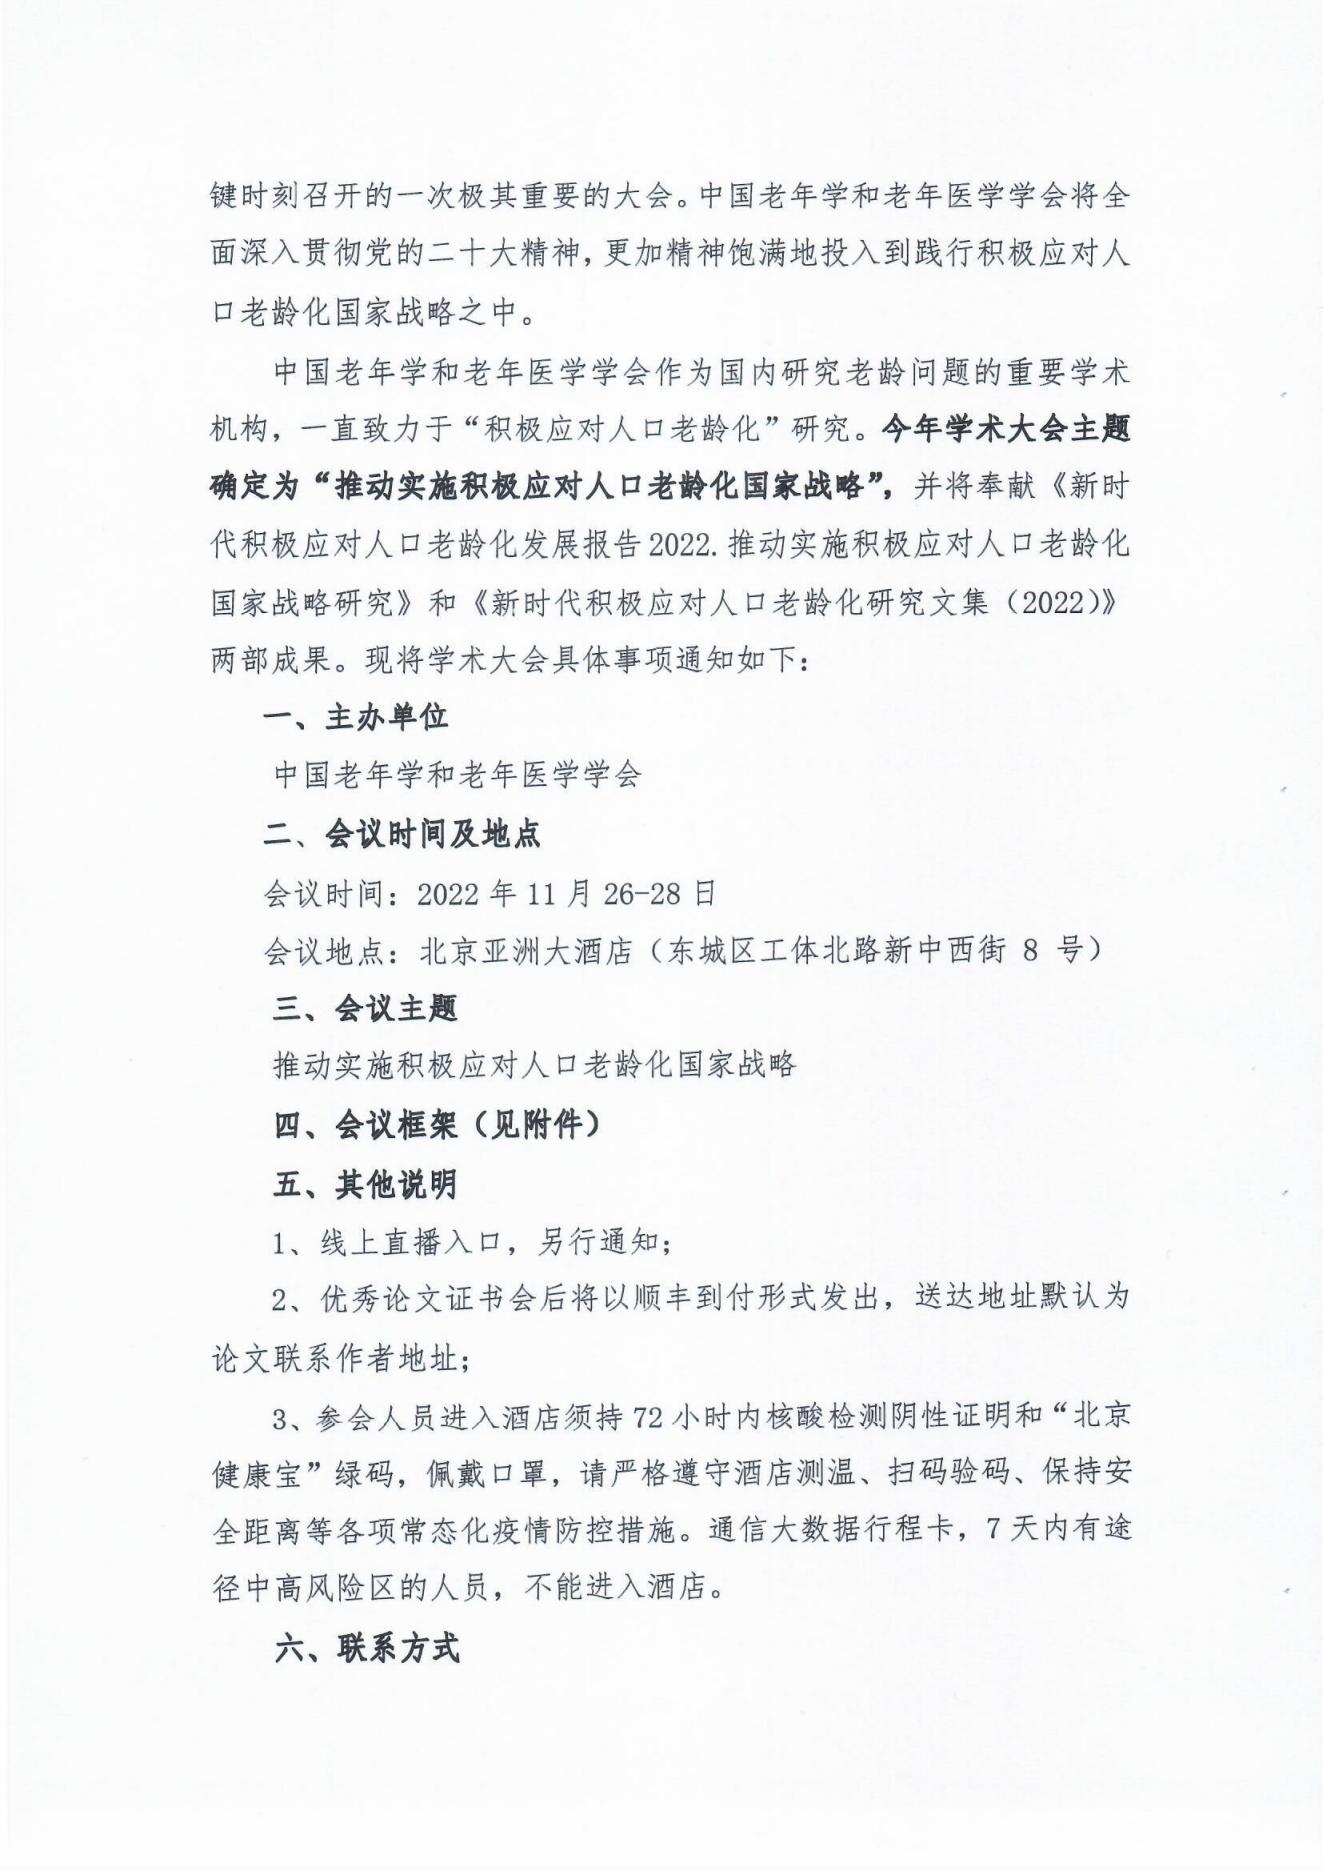 （31号文）中国老年学和老年医学学会关于召开2022年学术大会的通知(1)_01.jpg